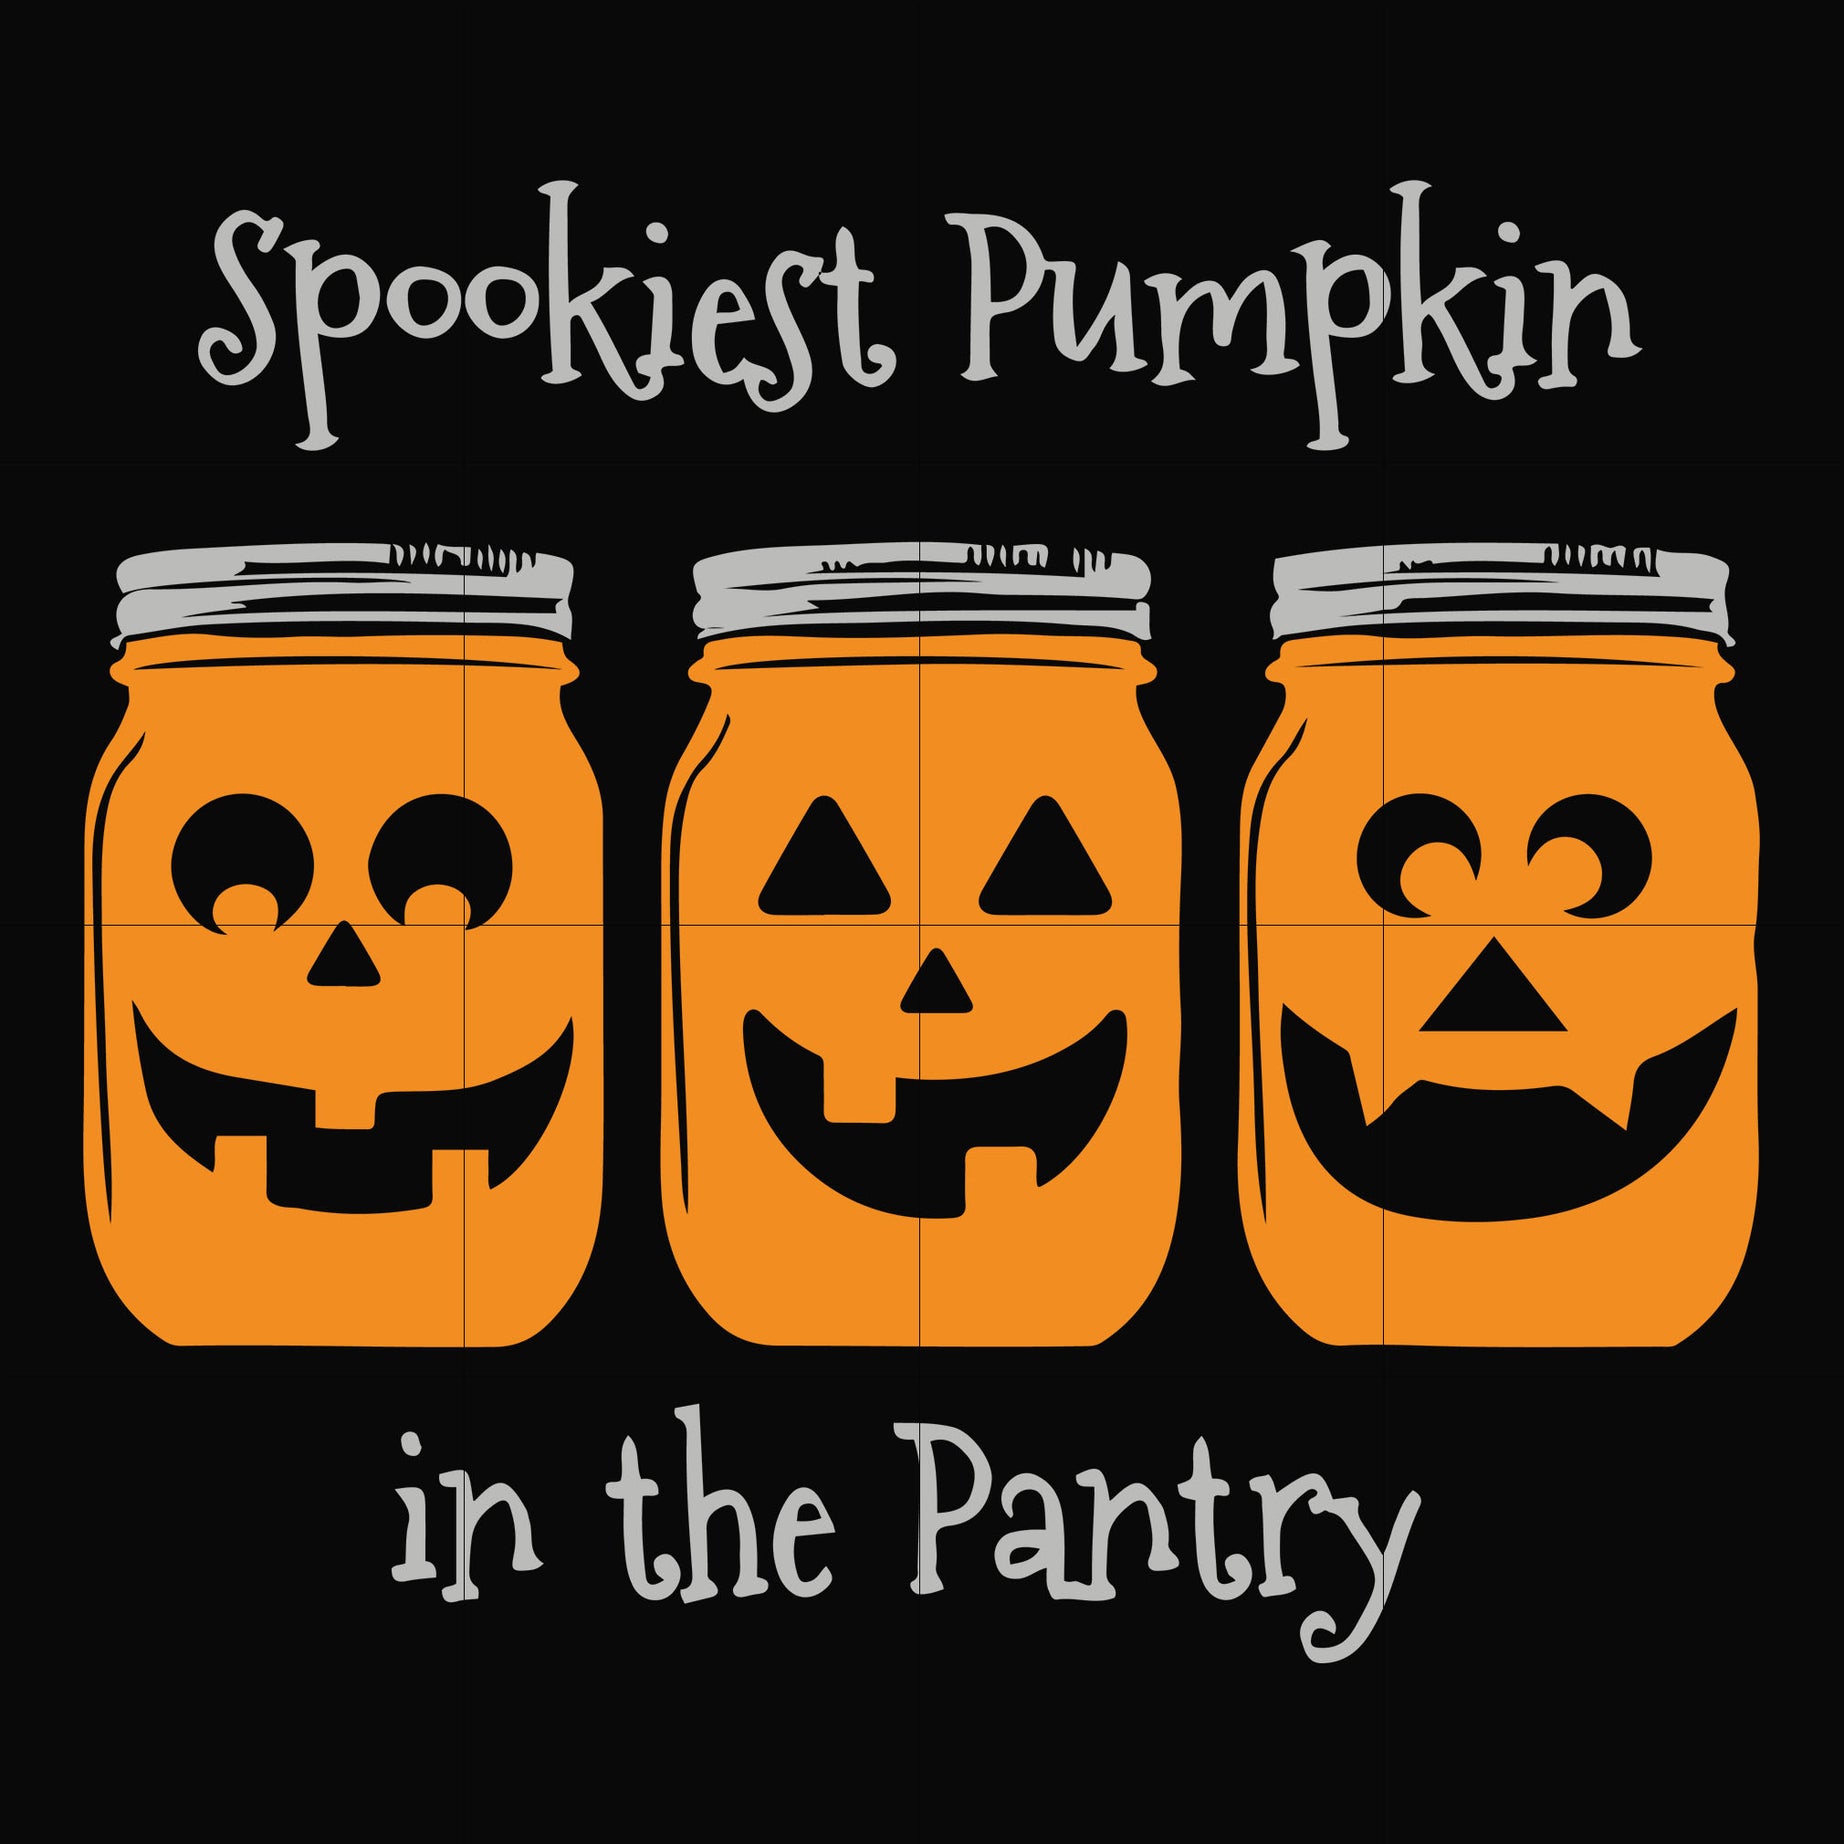 Spookies pumpkin in the Pantry svg, png, dxf, eps digital file HWL21072040